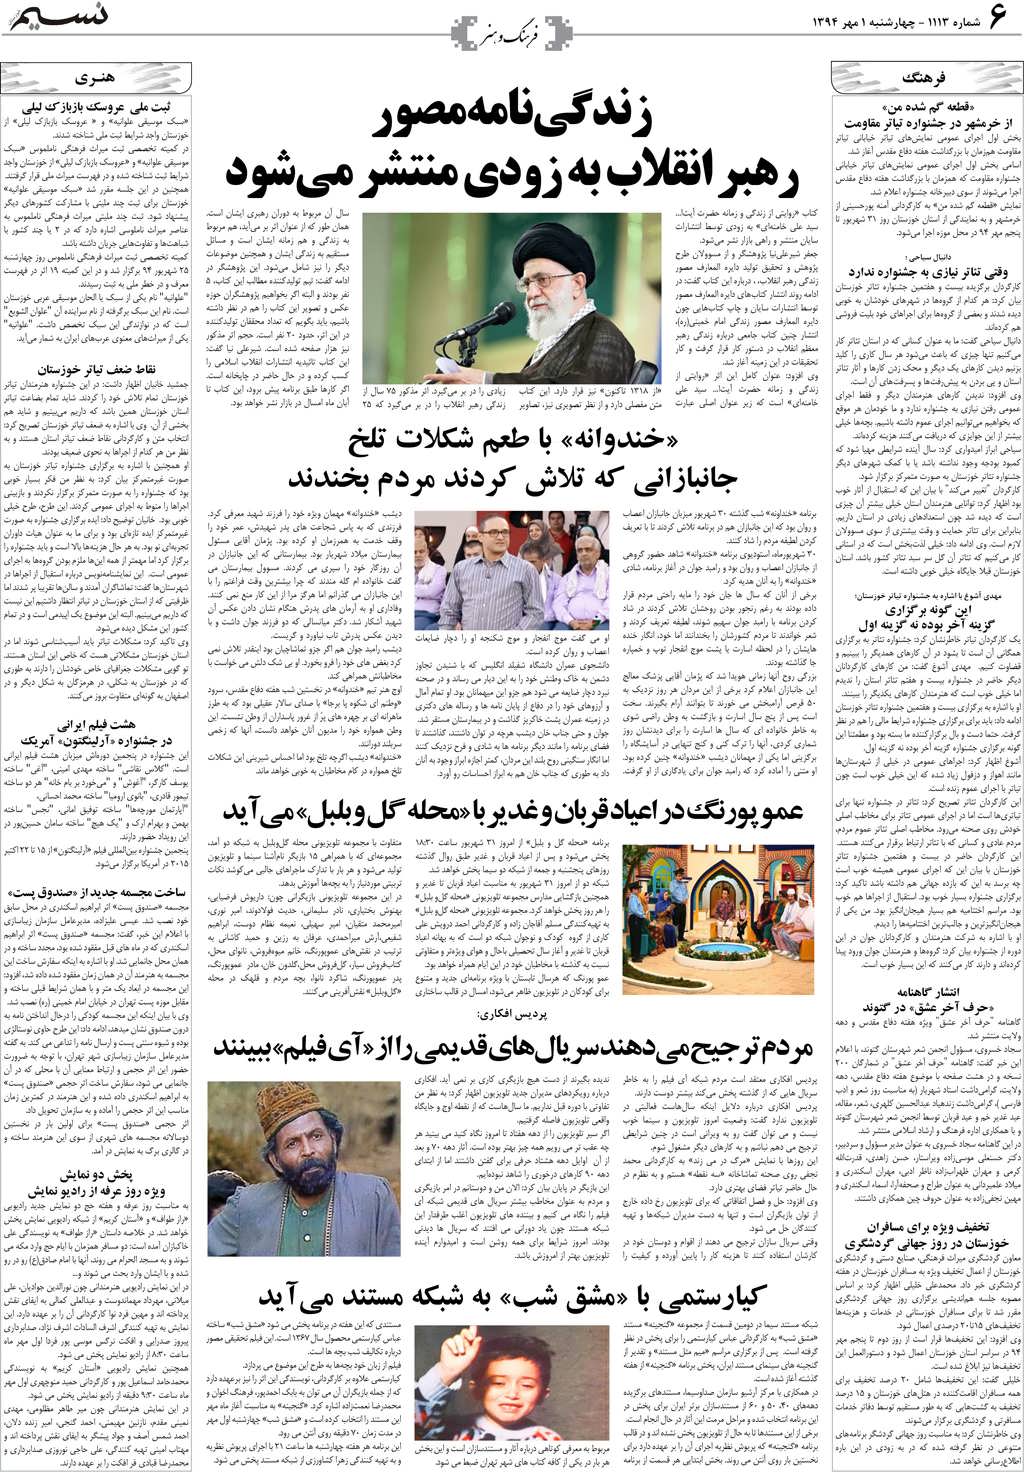 صفحه فرهنگ و هنر روزنامه نسیم شماره 1113